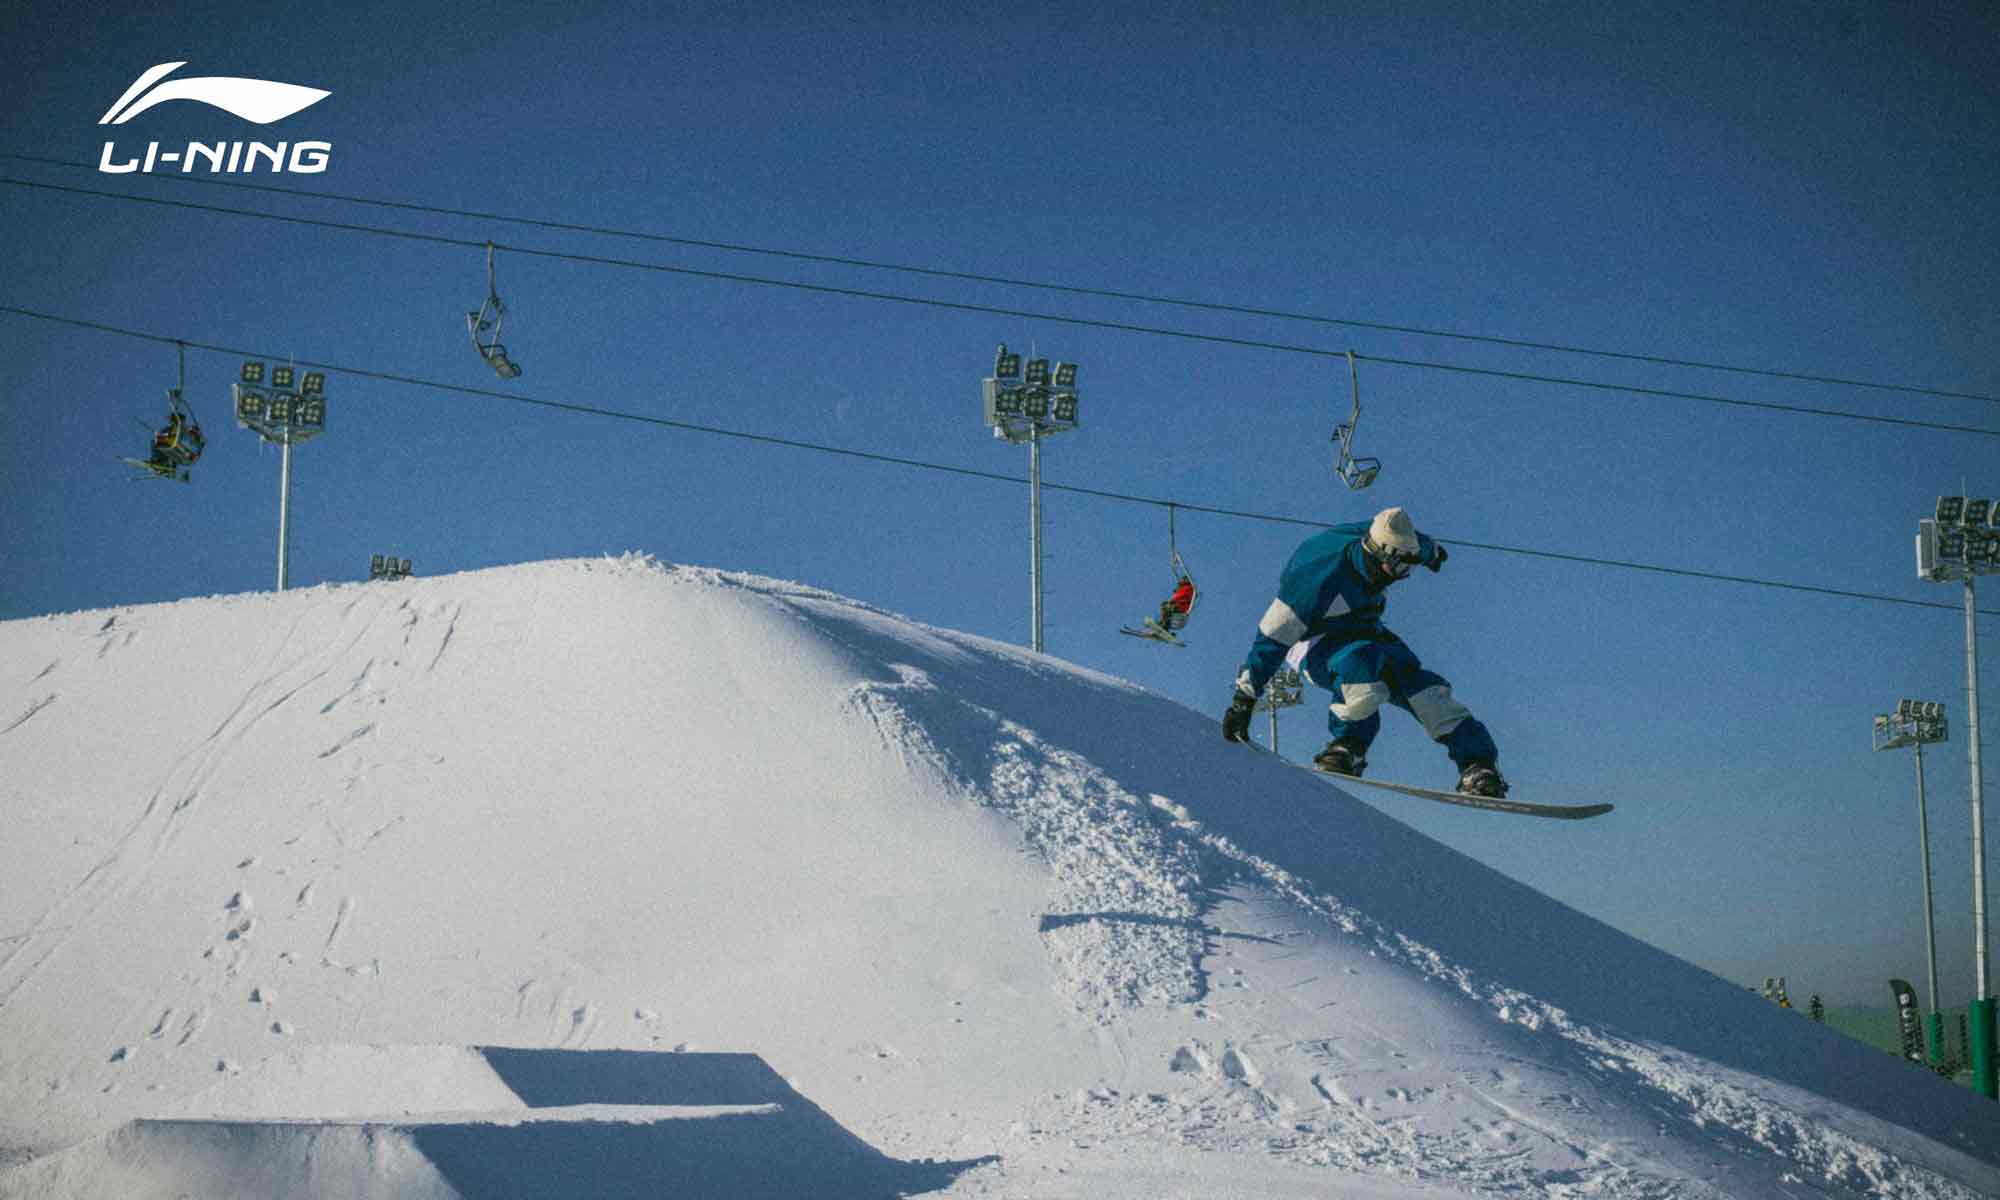 李宁品牌首次推出单板滑雪系列 LI-NING SNOWBOARDING